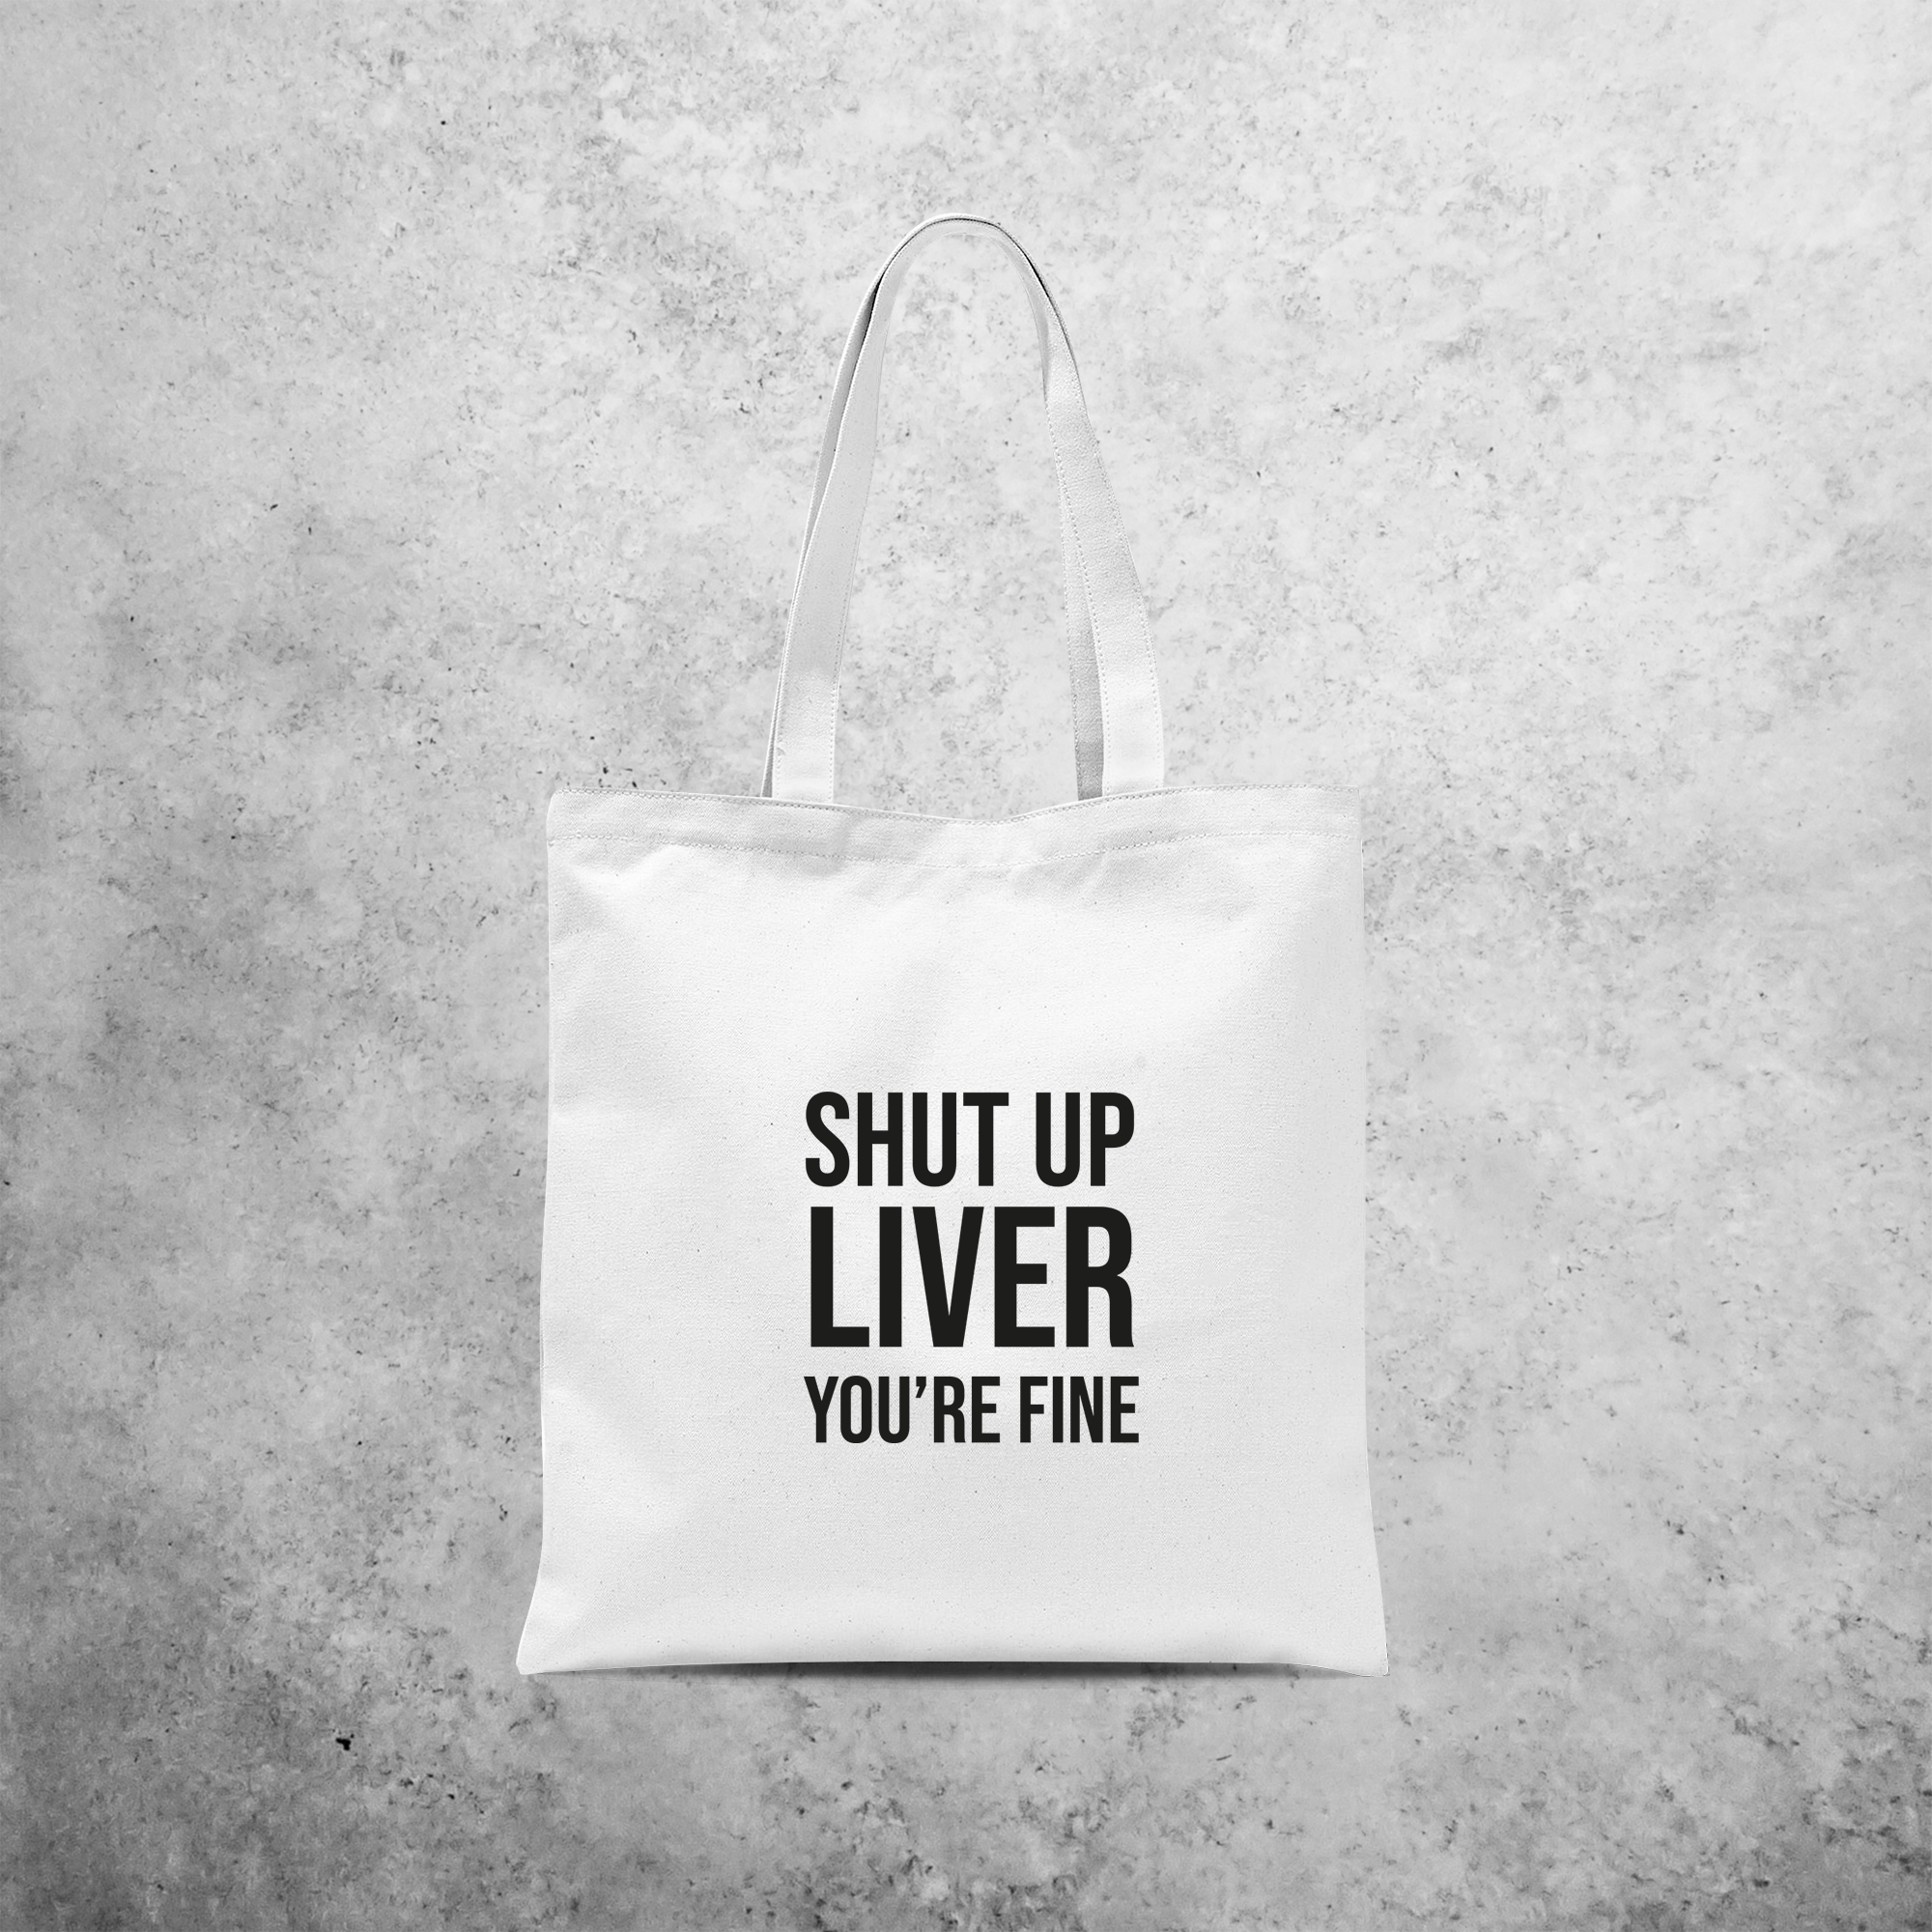 'Shut up liver, you're fine' tote bag